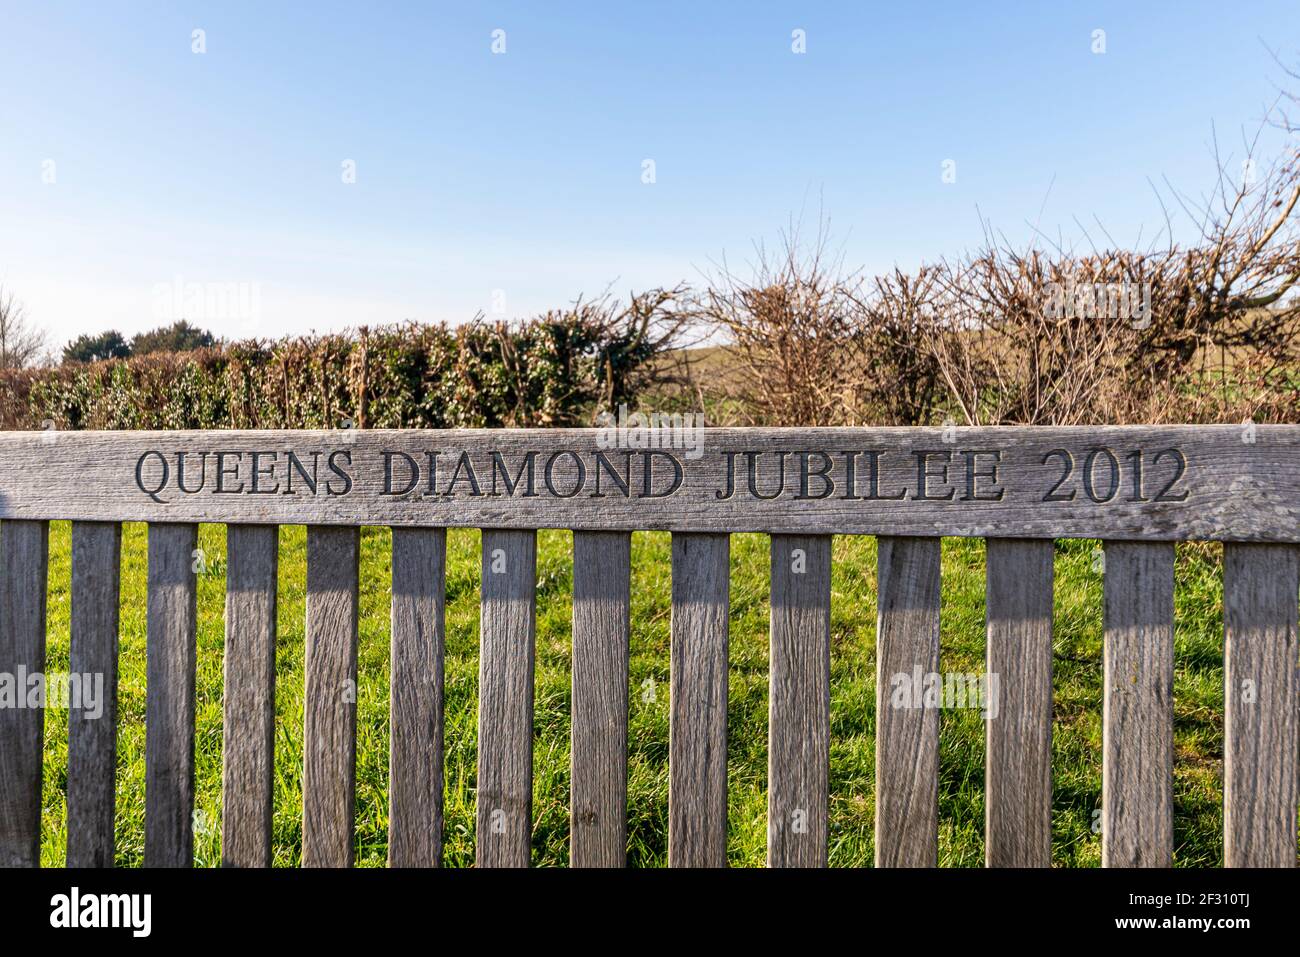 Queen's Diamond Jubilee 2012 geschnitzte Holzbank in Canewdon, Essex, Großbritannien. Ländliches Dorf Stockfoto